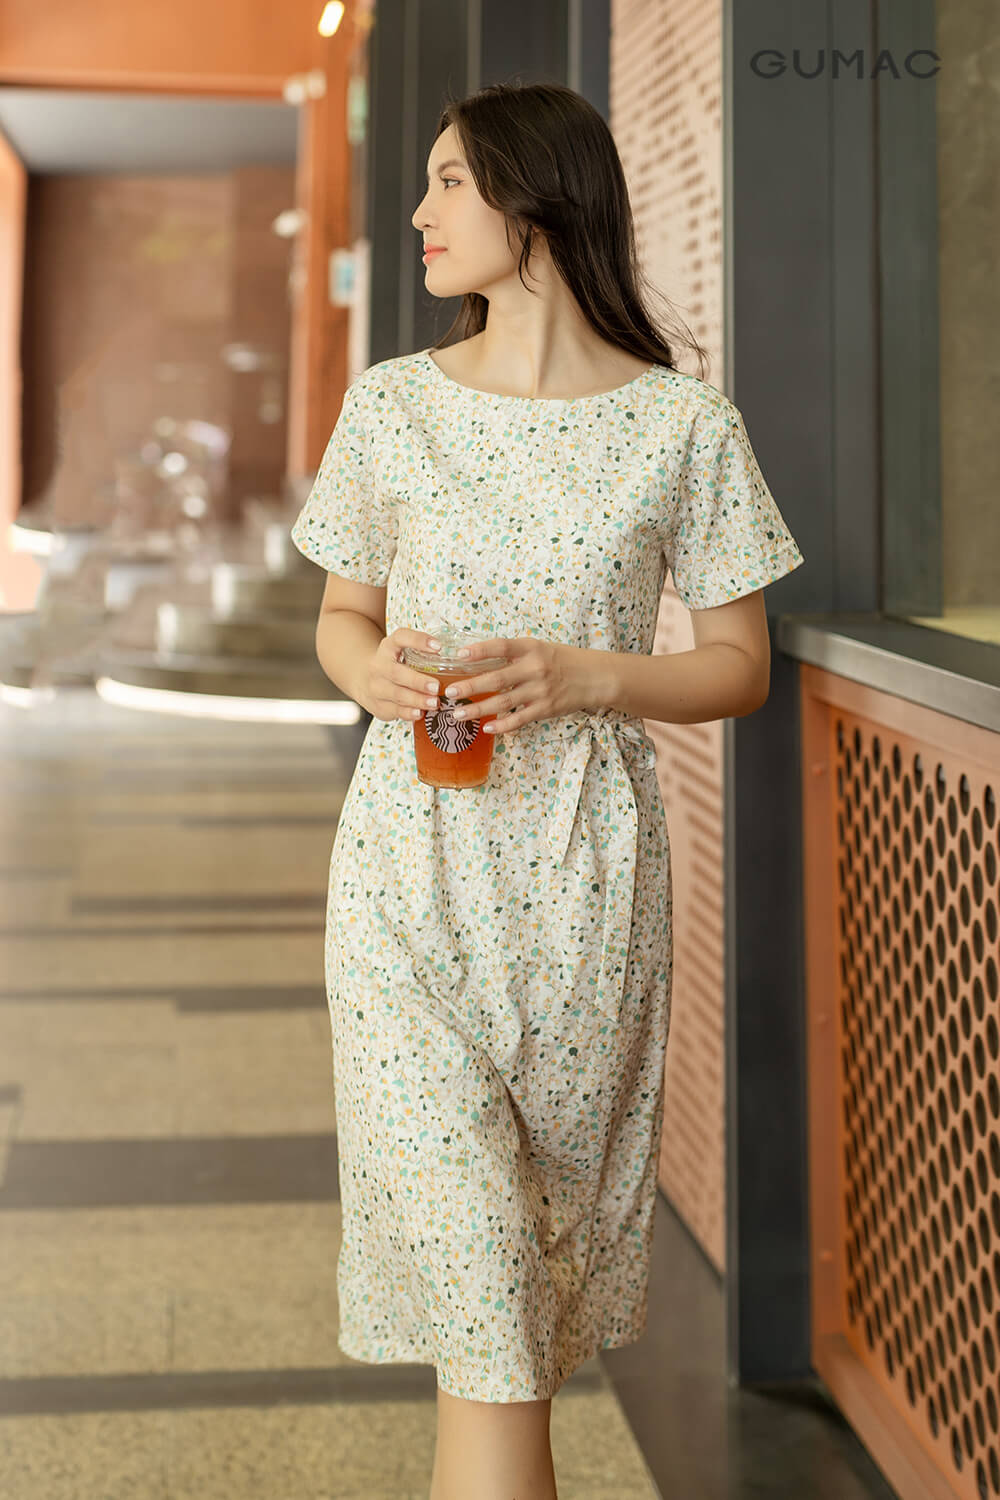 CHỈ 15-17.3 | TẶNG ÁO THUN ĐƠN 699K] Đầm nữ GUMAC DC07050 , Đầm dáng suông  chất liệu Lụa Nhật tay nhúng thời trang | Lazada.vn